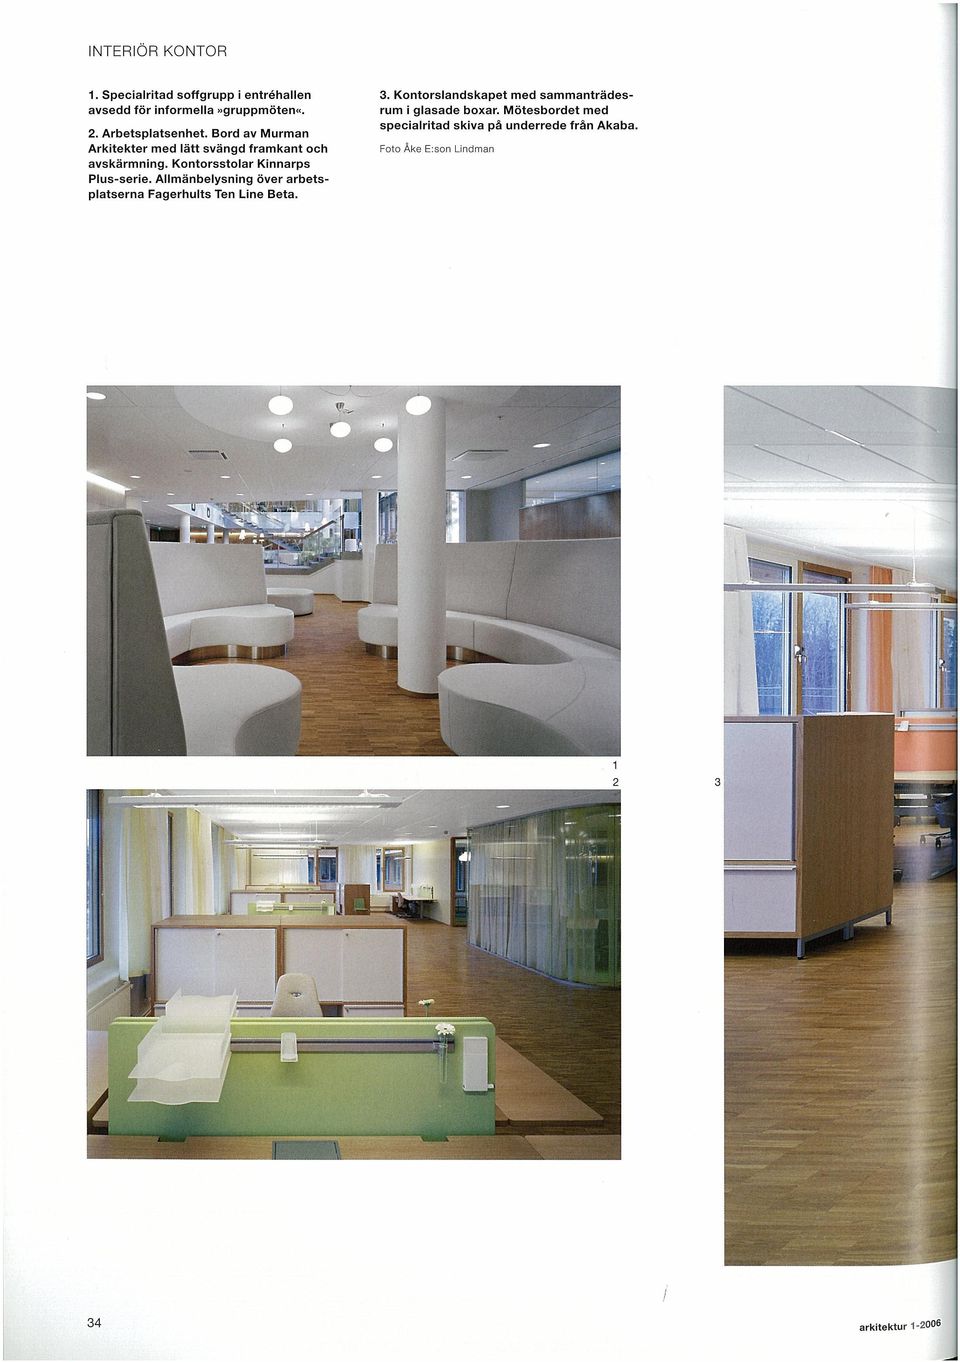 Kinnarps Plus-serie Allmänbelysning över arbets platserna Fagerhuits Ten Line Beta 3 Kontorslandskapet